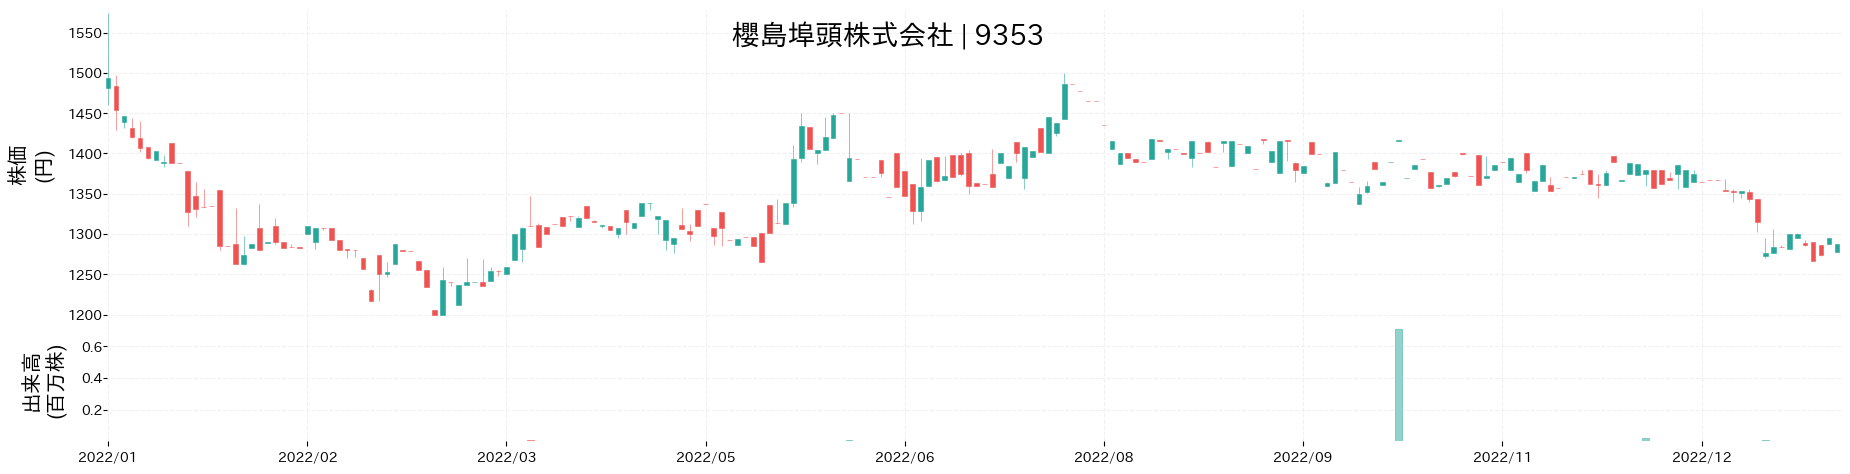 櫻島埠頭の株価推移(2022)